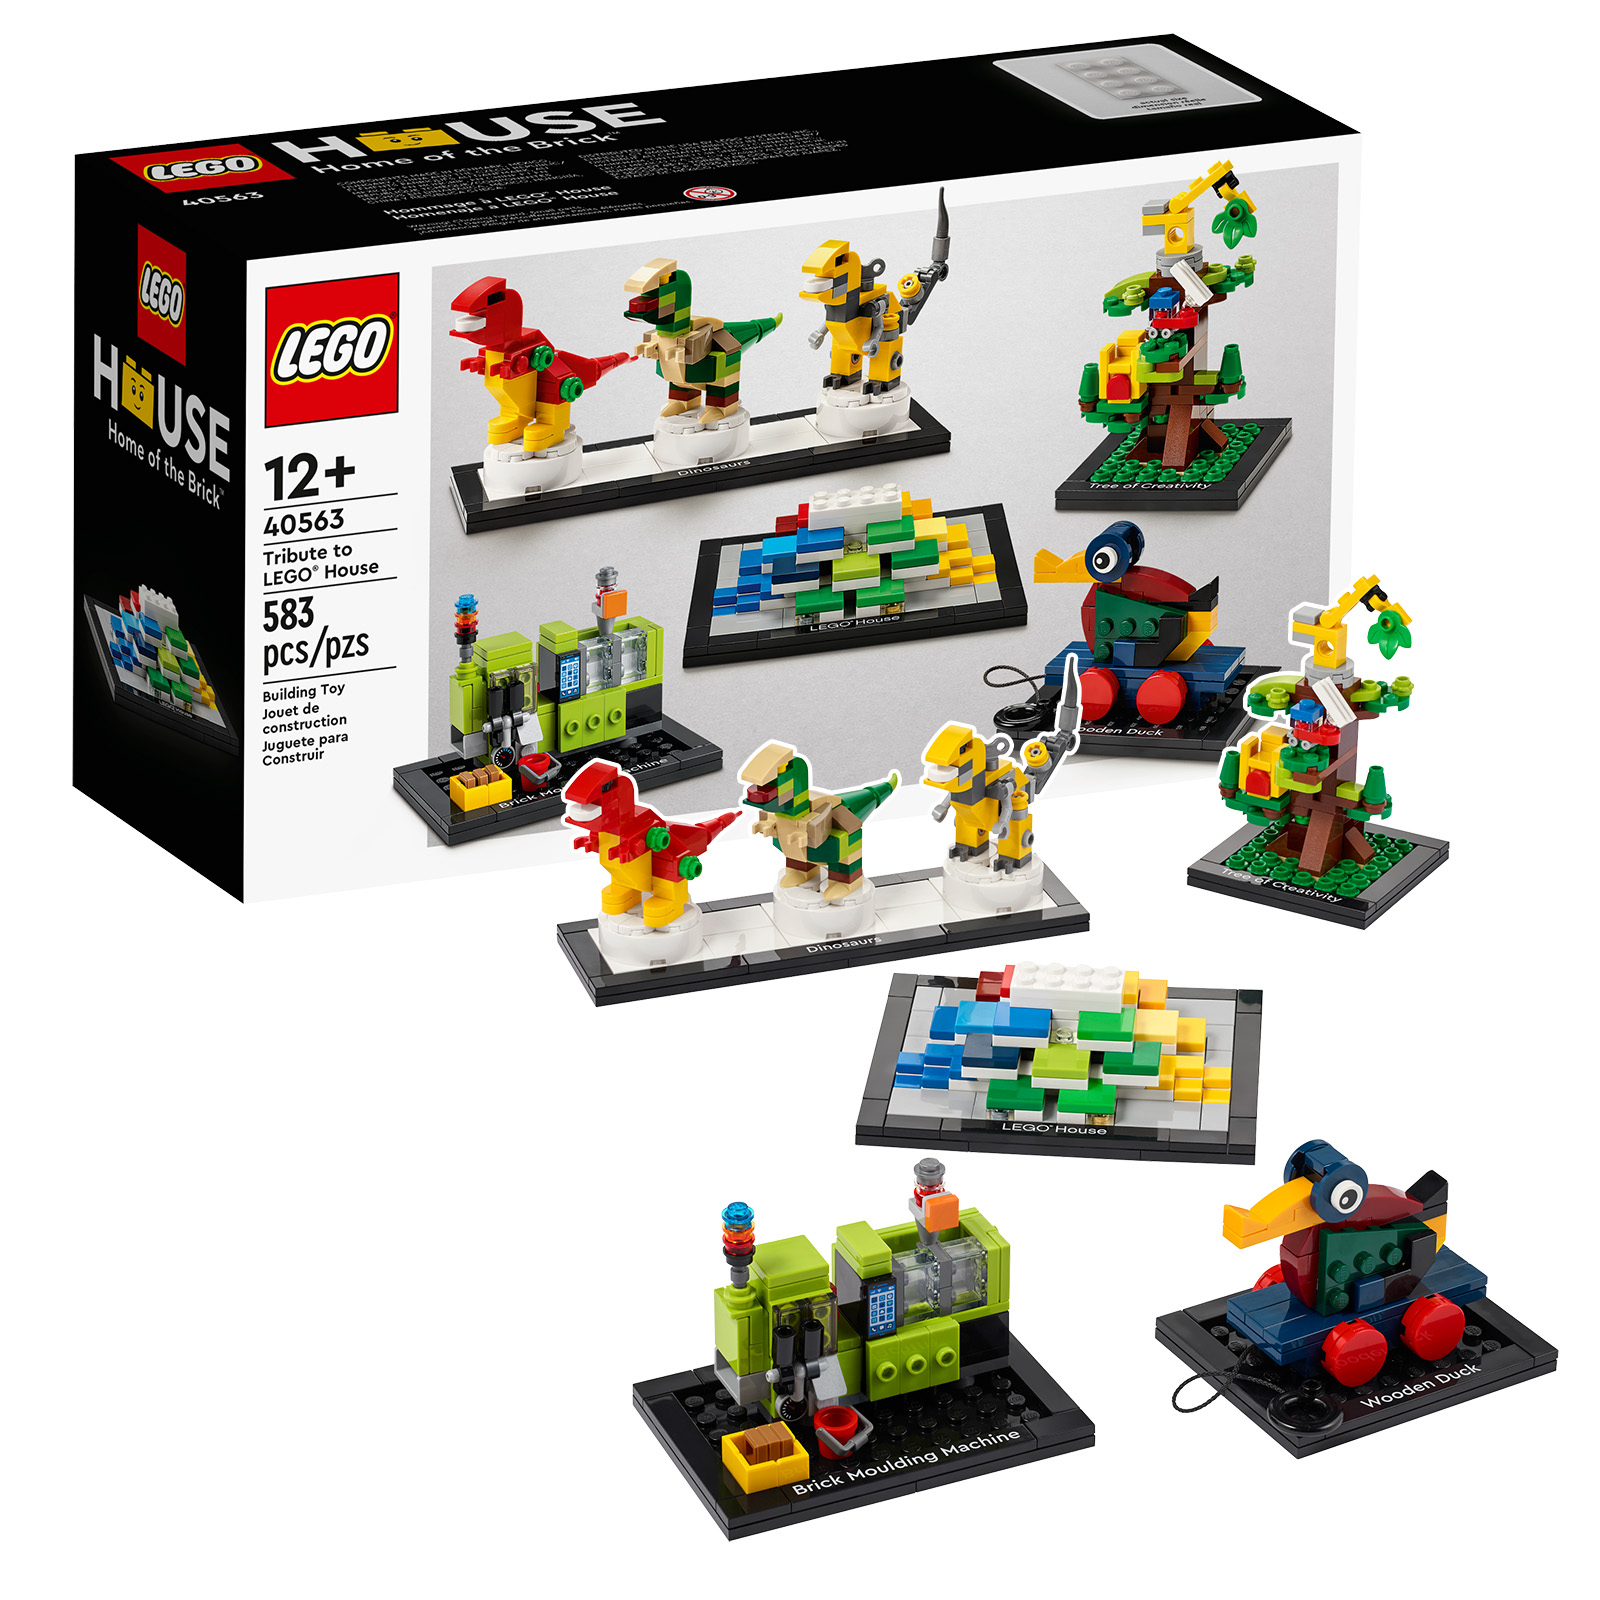 Onthou: laaste ure om 'n kopie van die LEGO 40563 Huldeblyk aan LEGO House-stel te kry